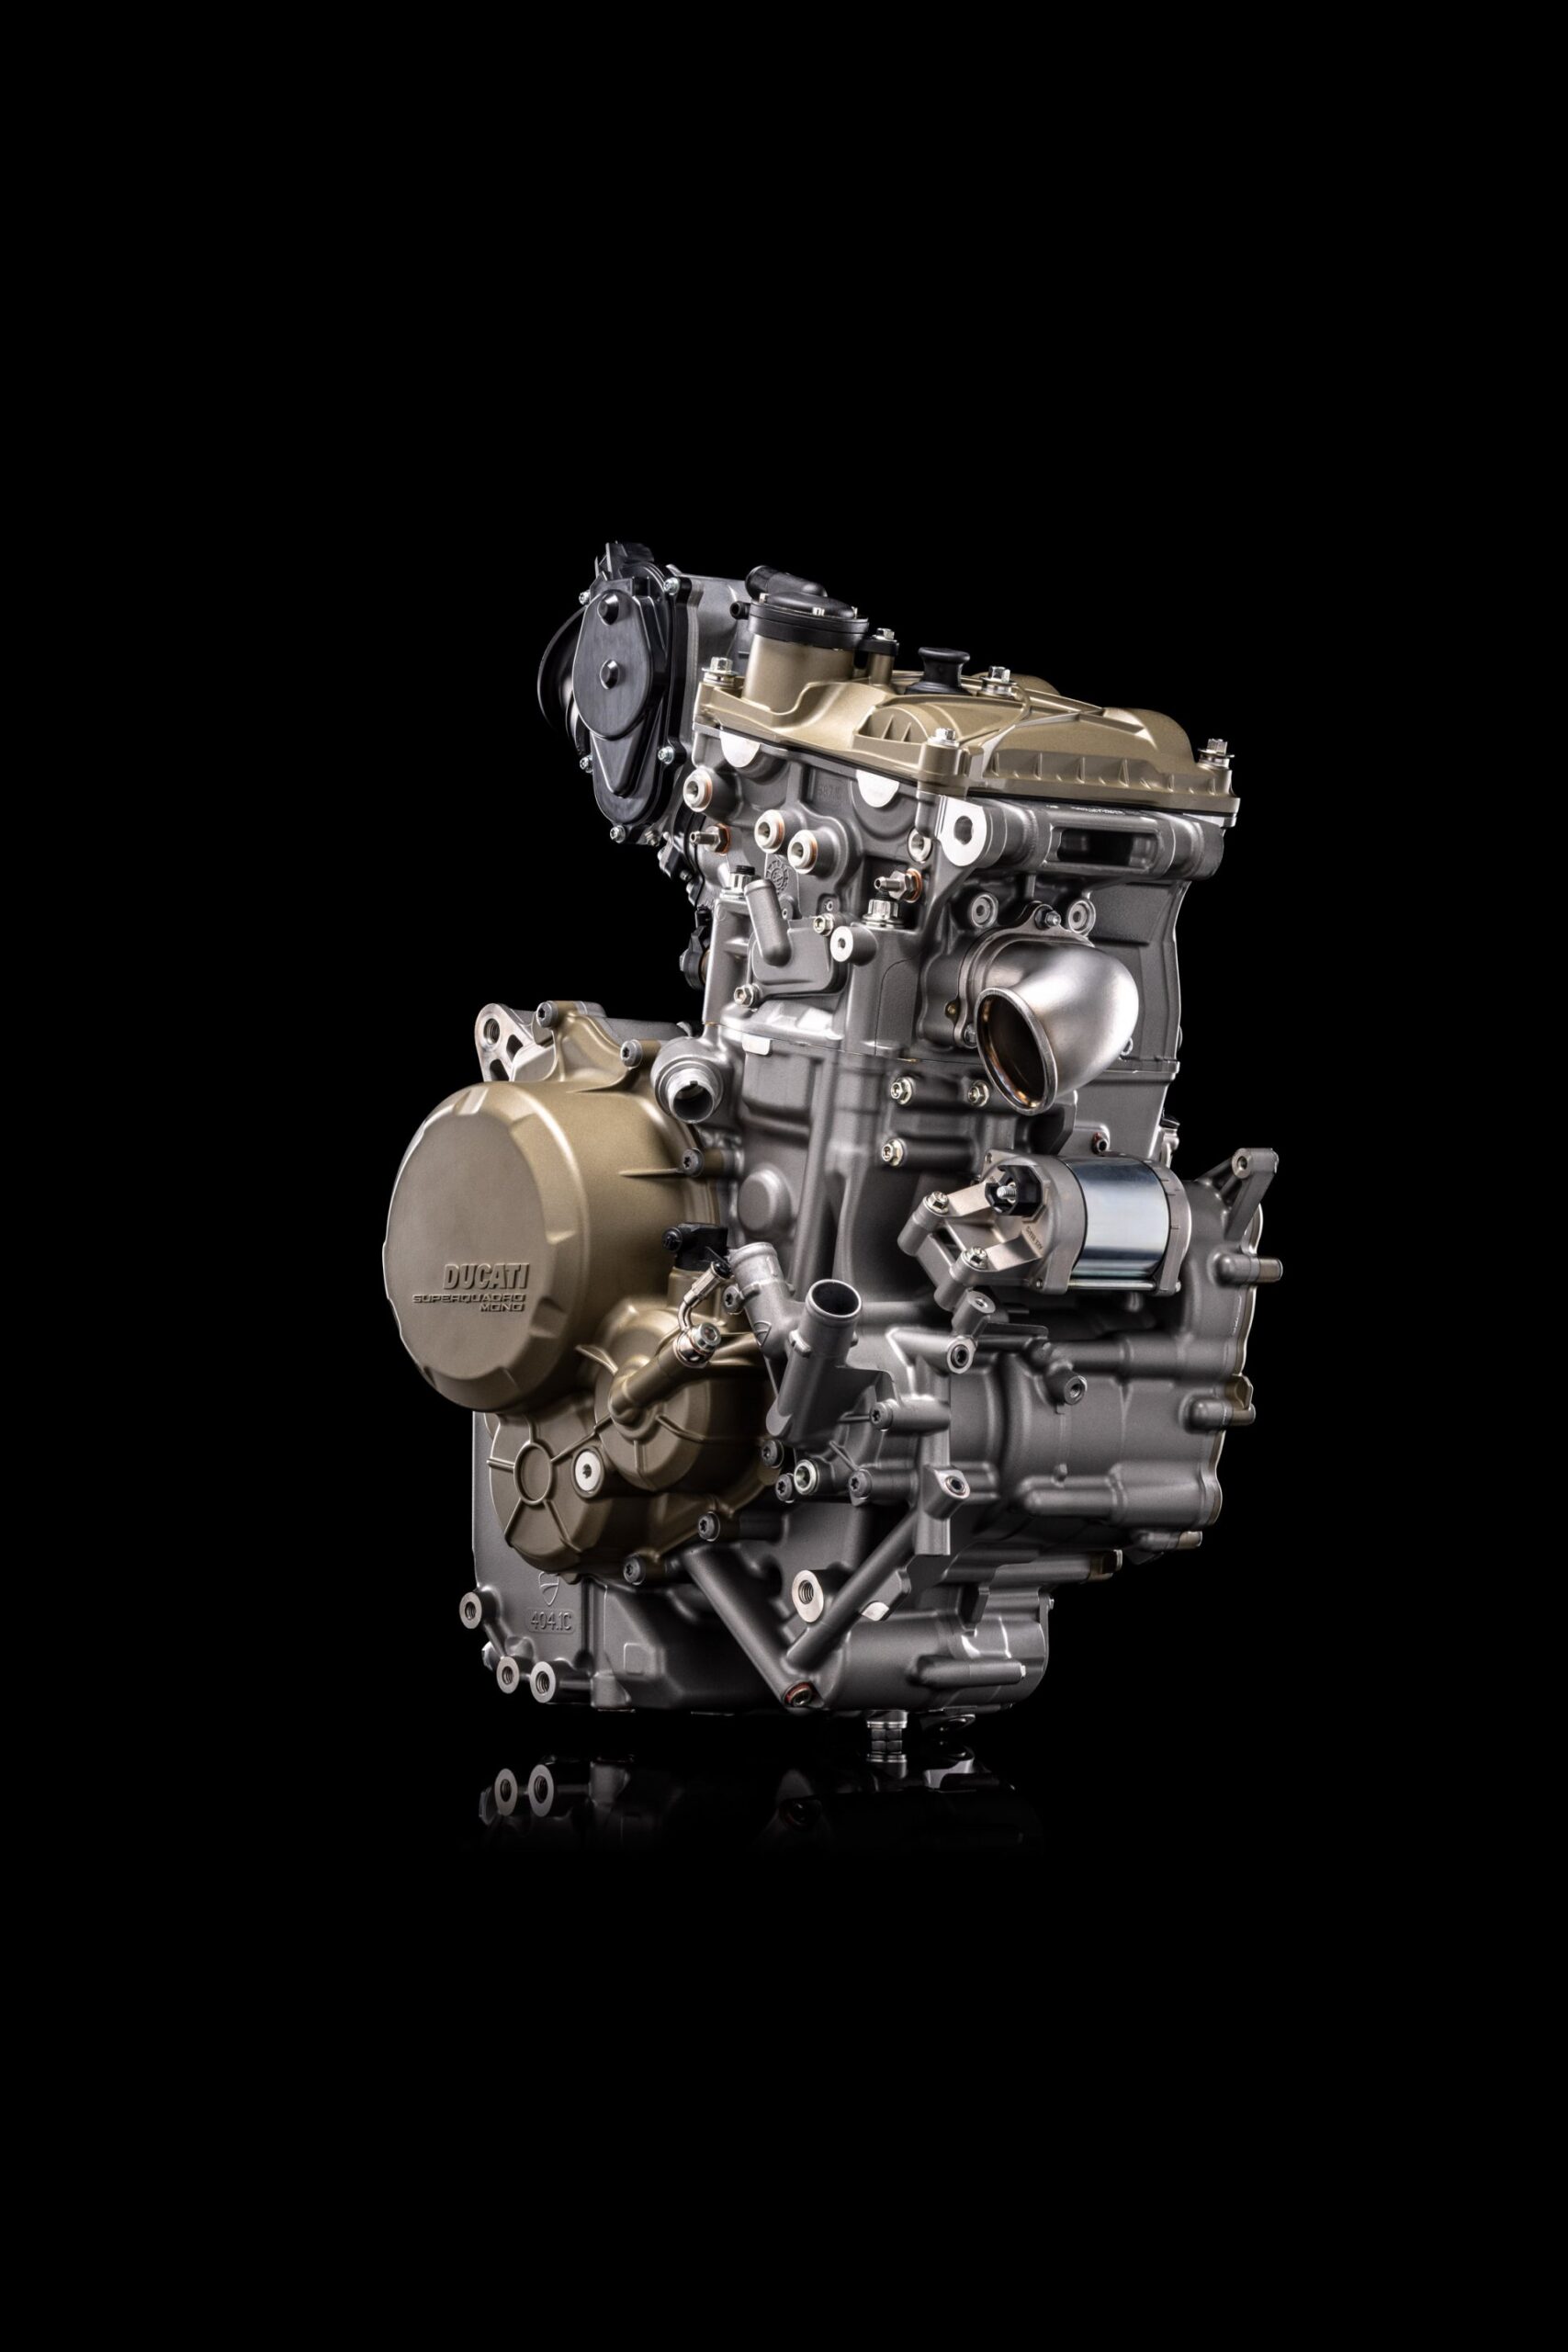 Superquadro Mono – Il motore Monocilindrico secondo Ducati